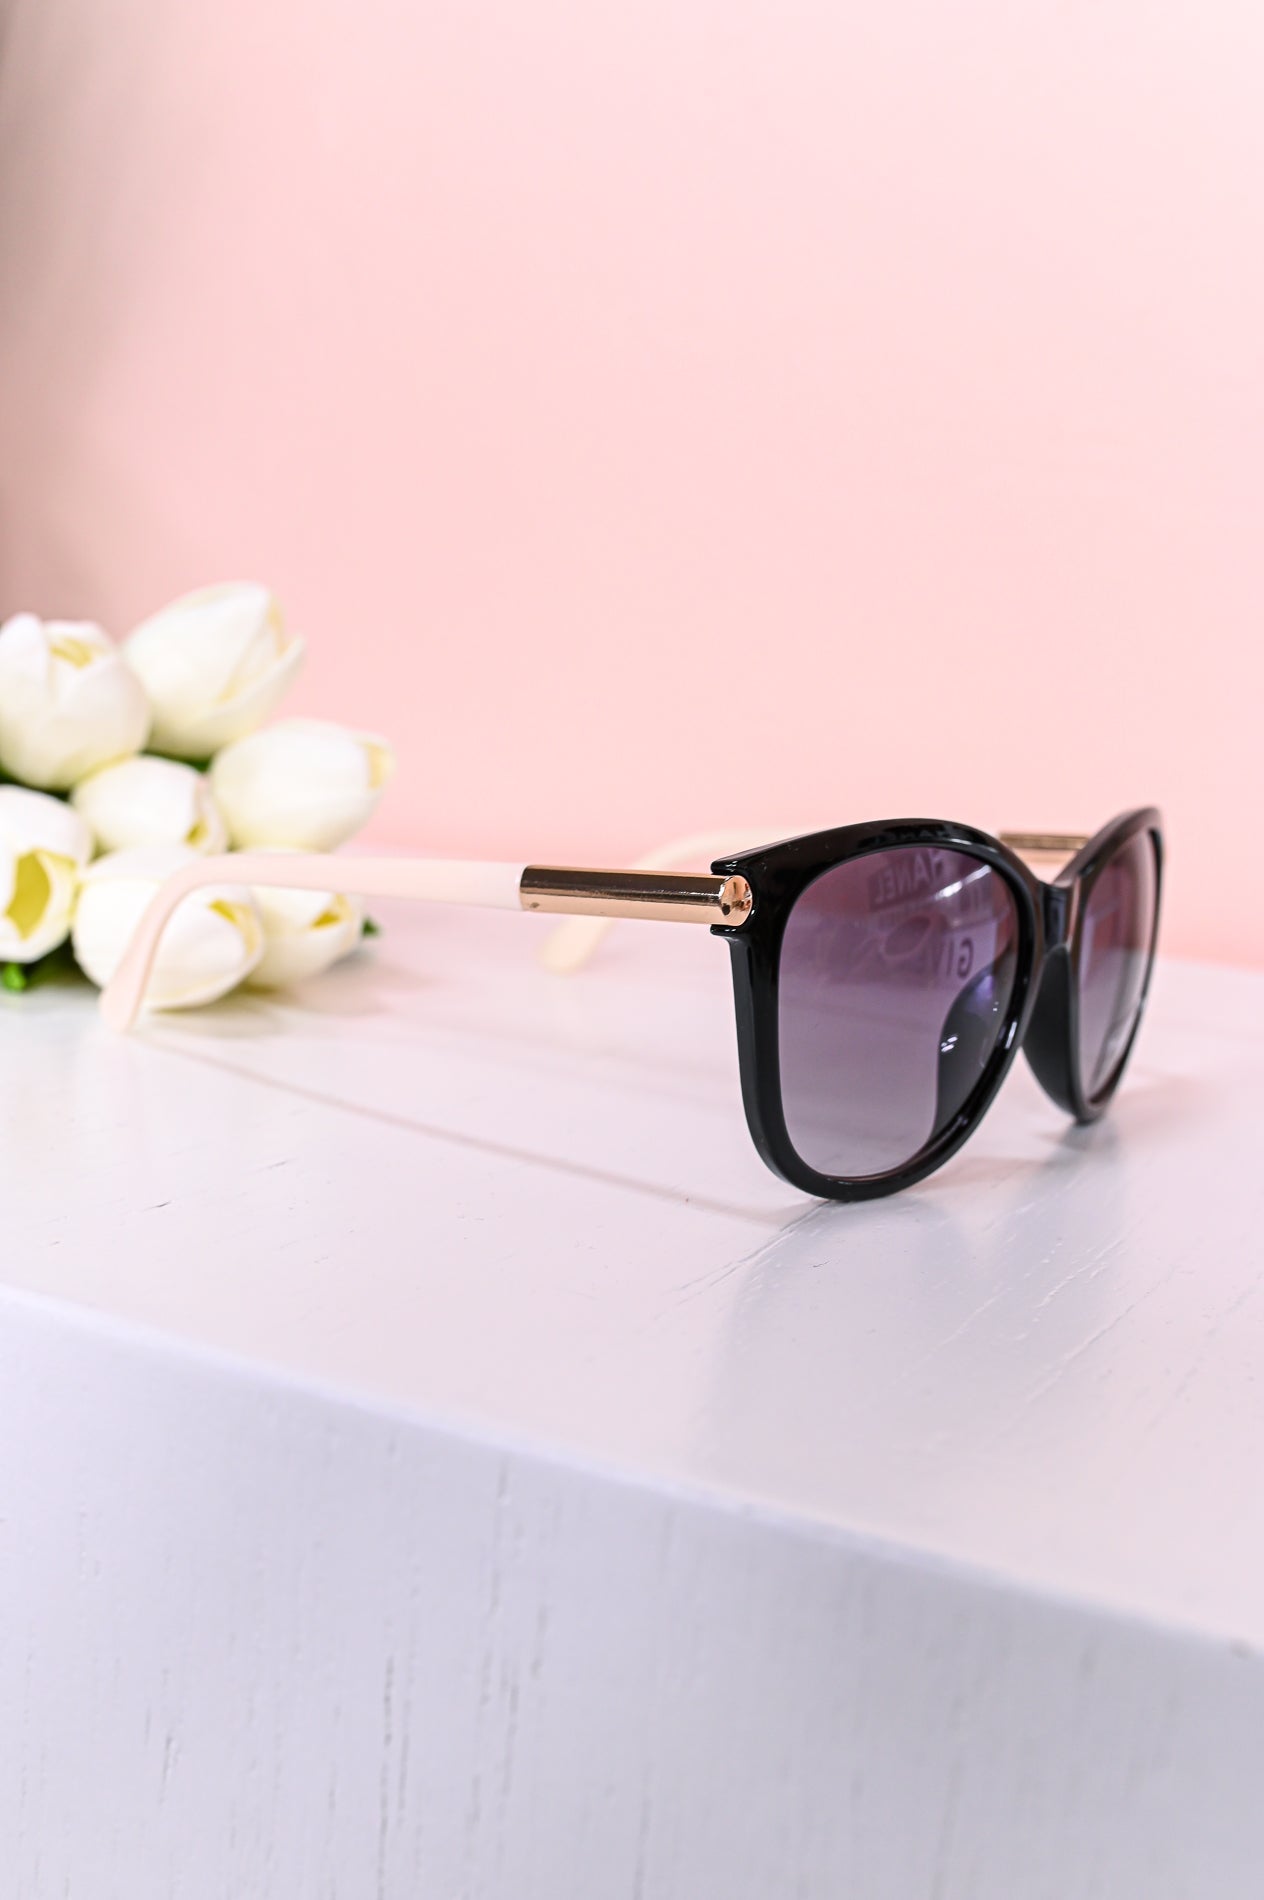 Black/White Oversized Cateye Lens Sunglasses - SGL330BK